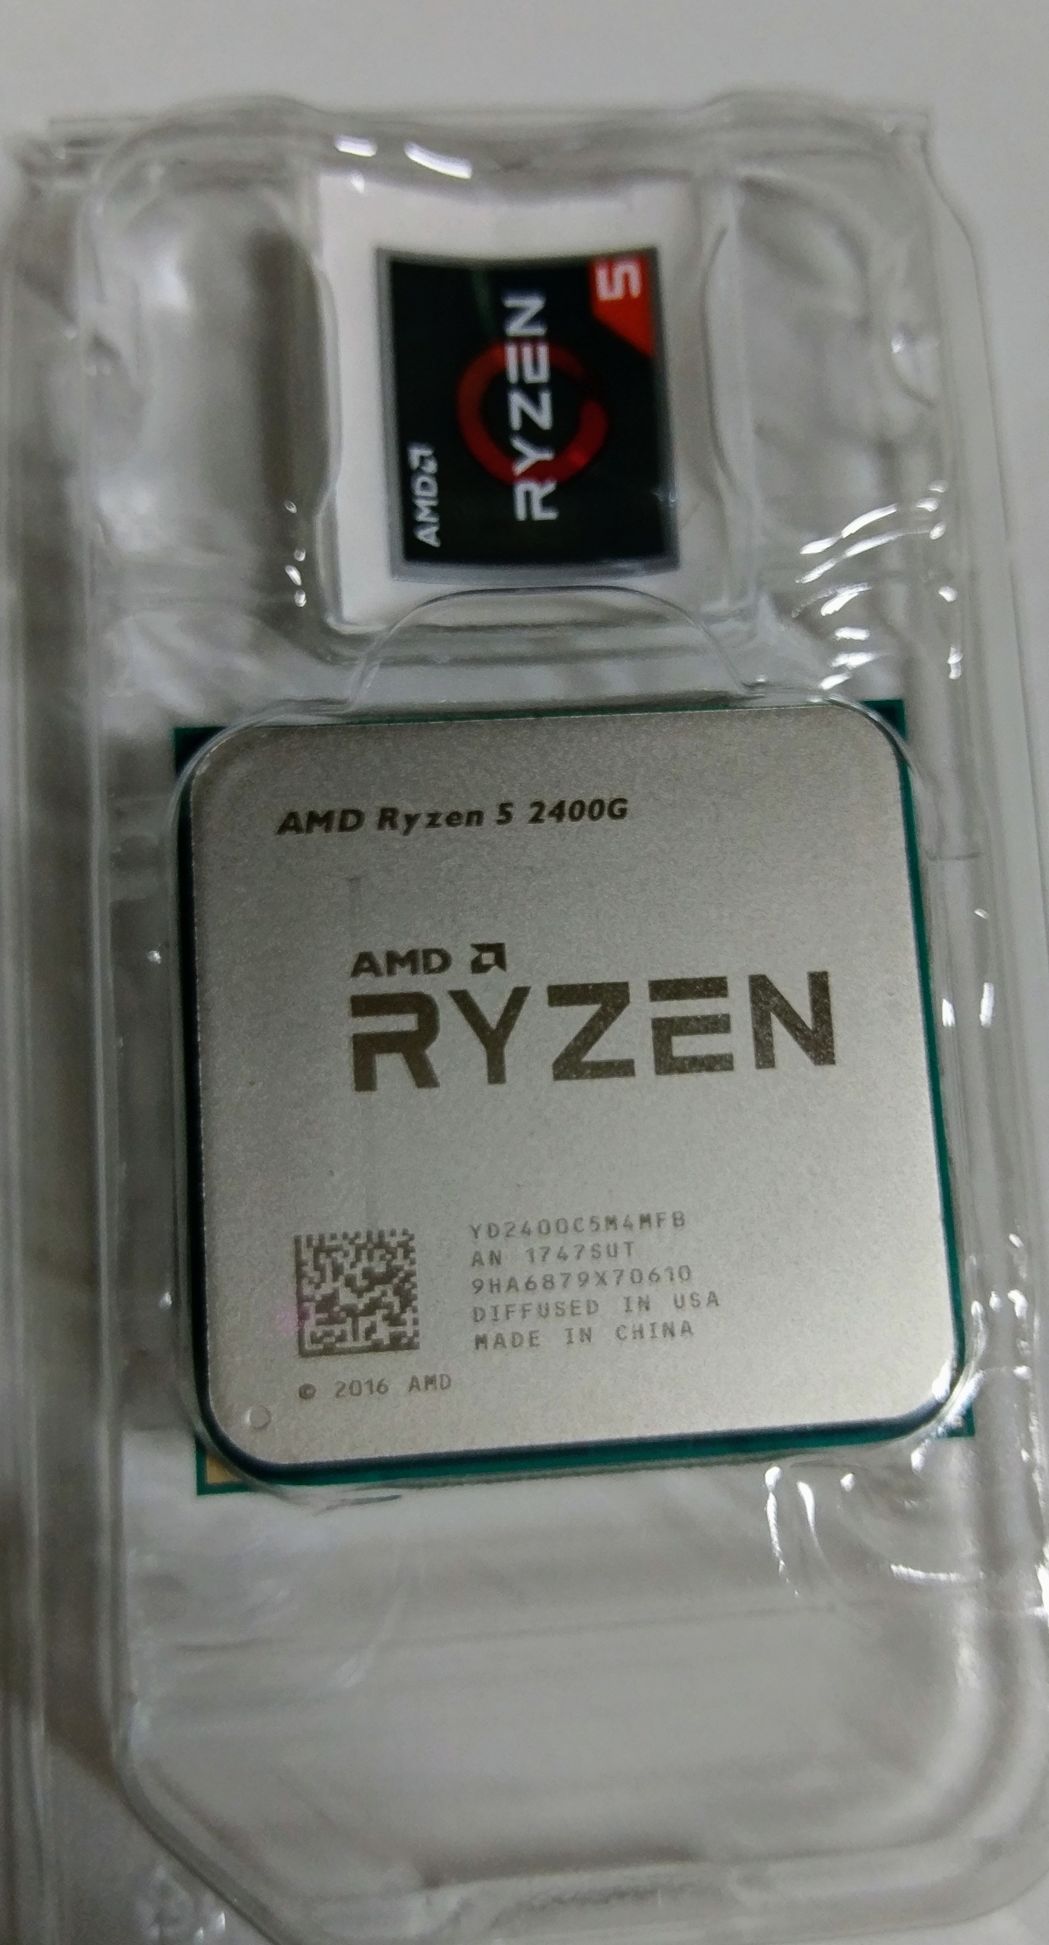 心得】Ryzen 5 2400G 簡單開箱@AMD Fans 俱樂部哈啦板- 巴哈姆特